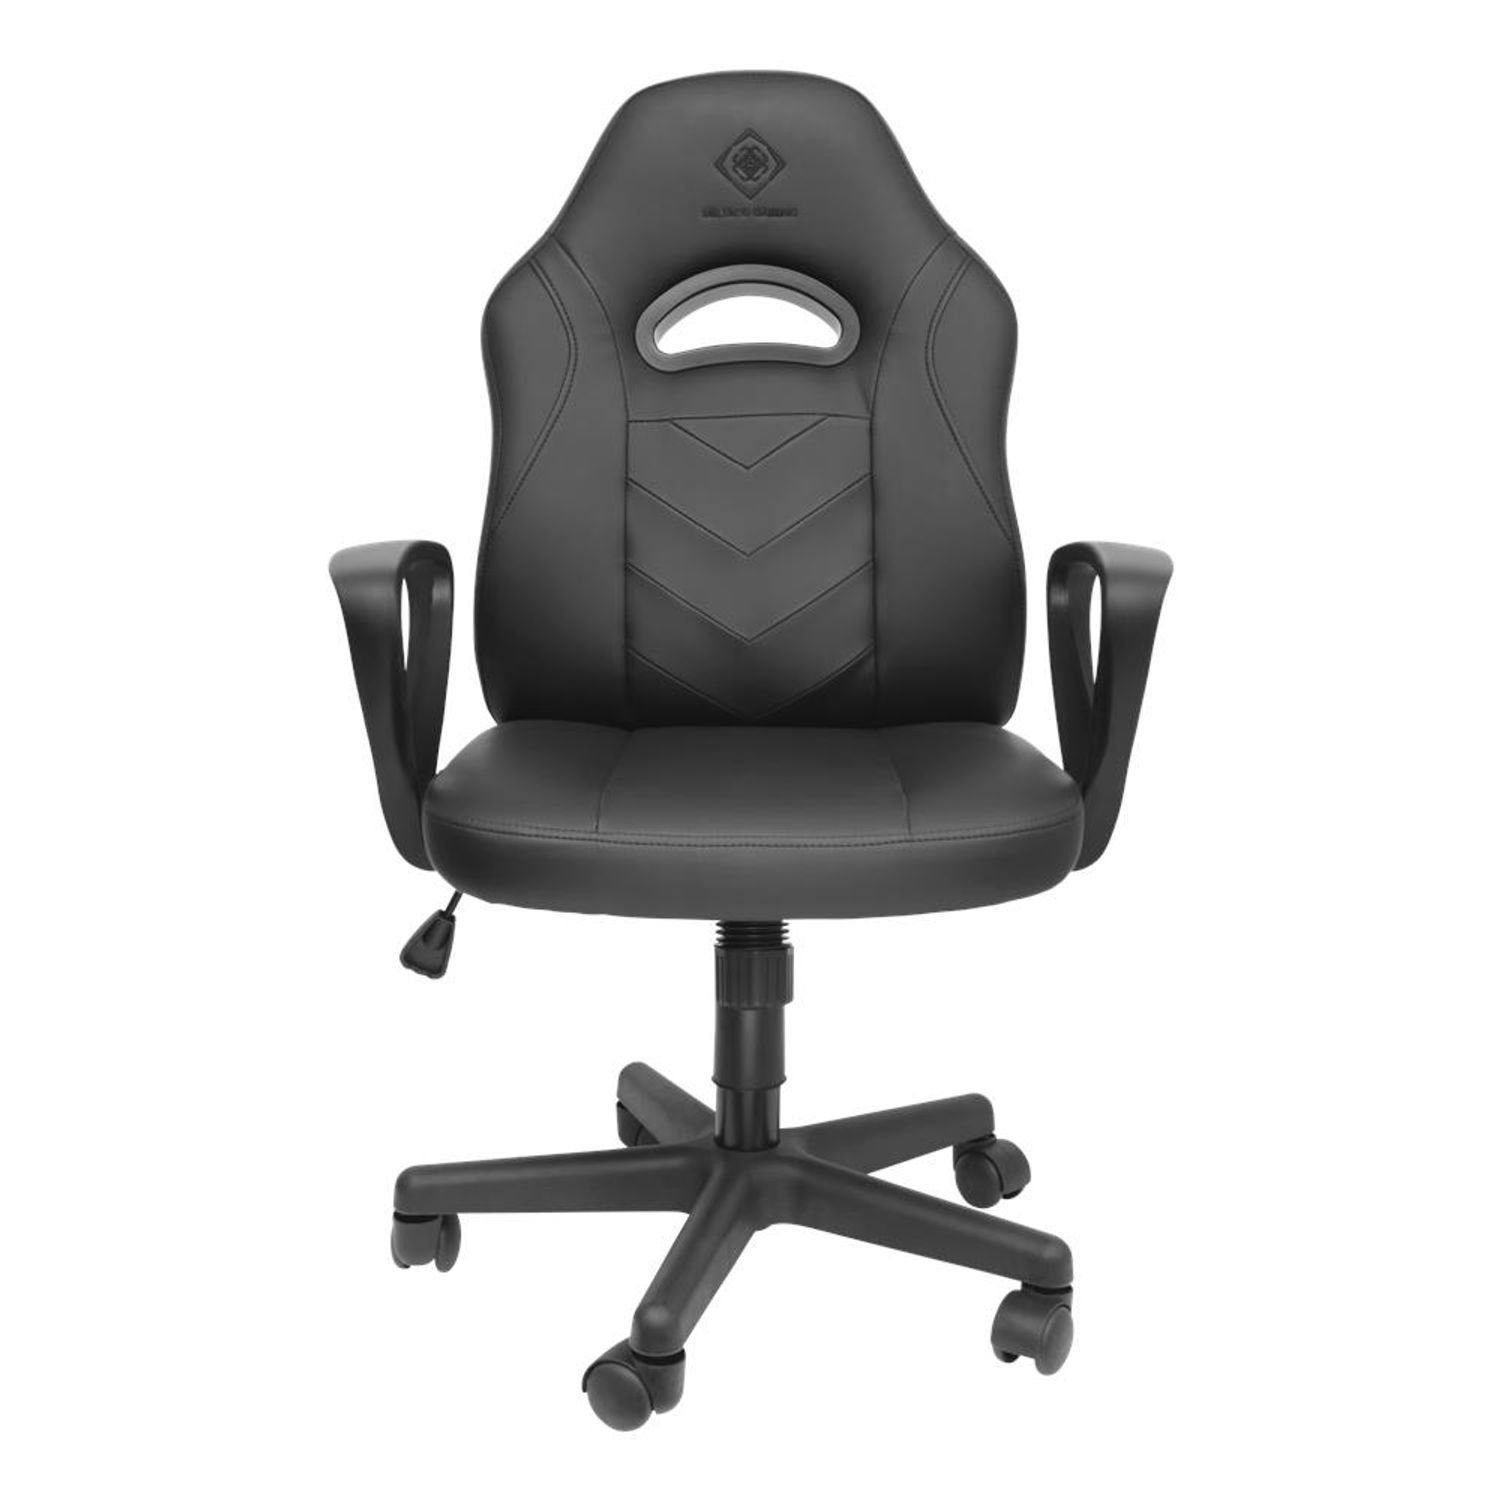 selbst Gaming-Stuhl 5 Sitzen nach DC110 Jahre langem (kein Set), extra DELTACO bequem klein schwarz Stuhl Herstellergarantie inkl. Gaming